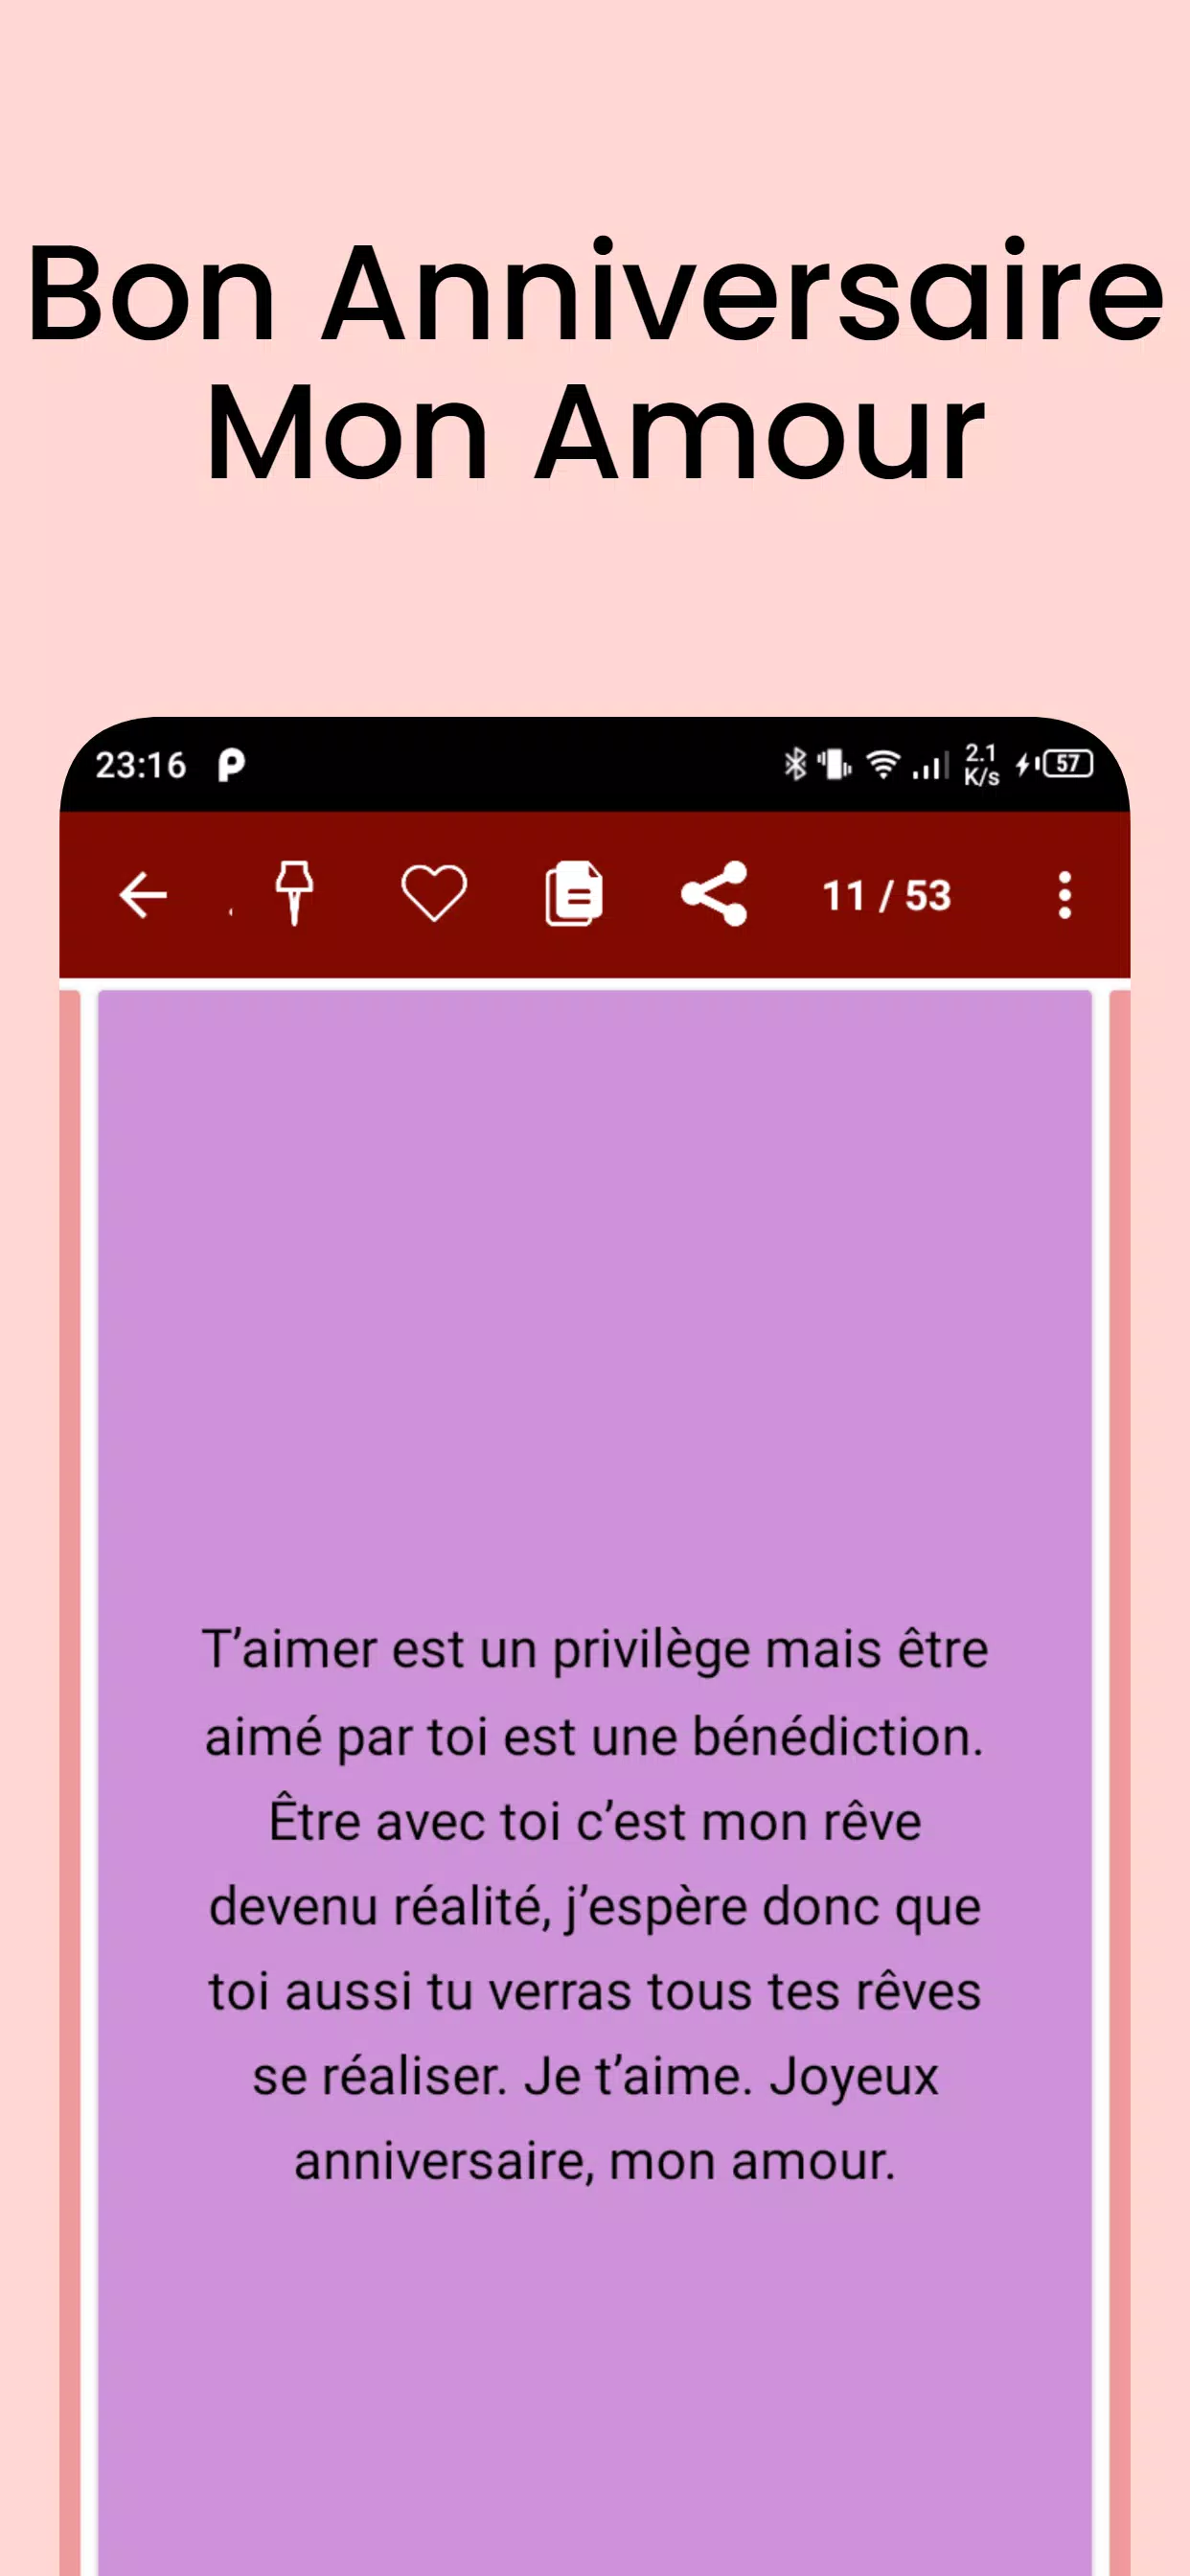 Bon Anniversaire Mon Amour Apk For Android Download